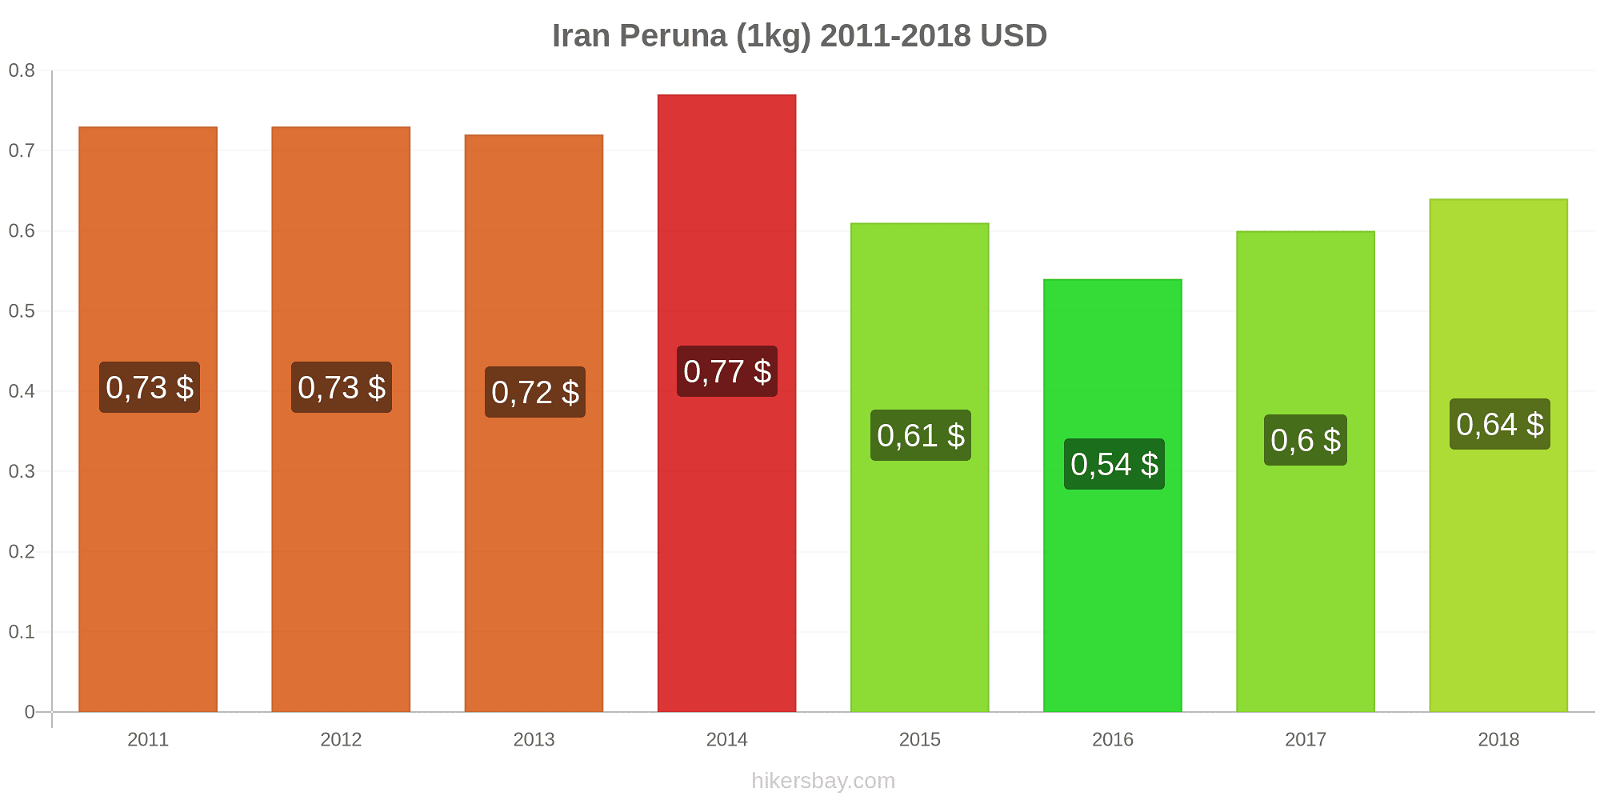 Iran hintojen muutokset Peruna (1kg) hikersbay.com